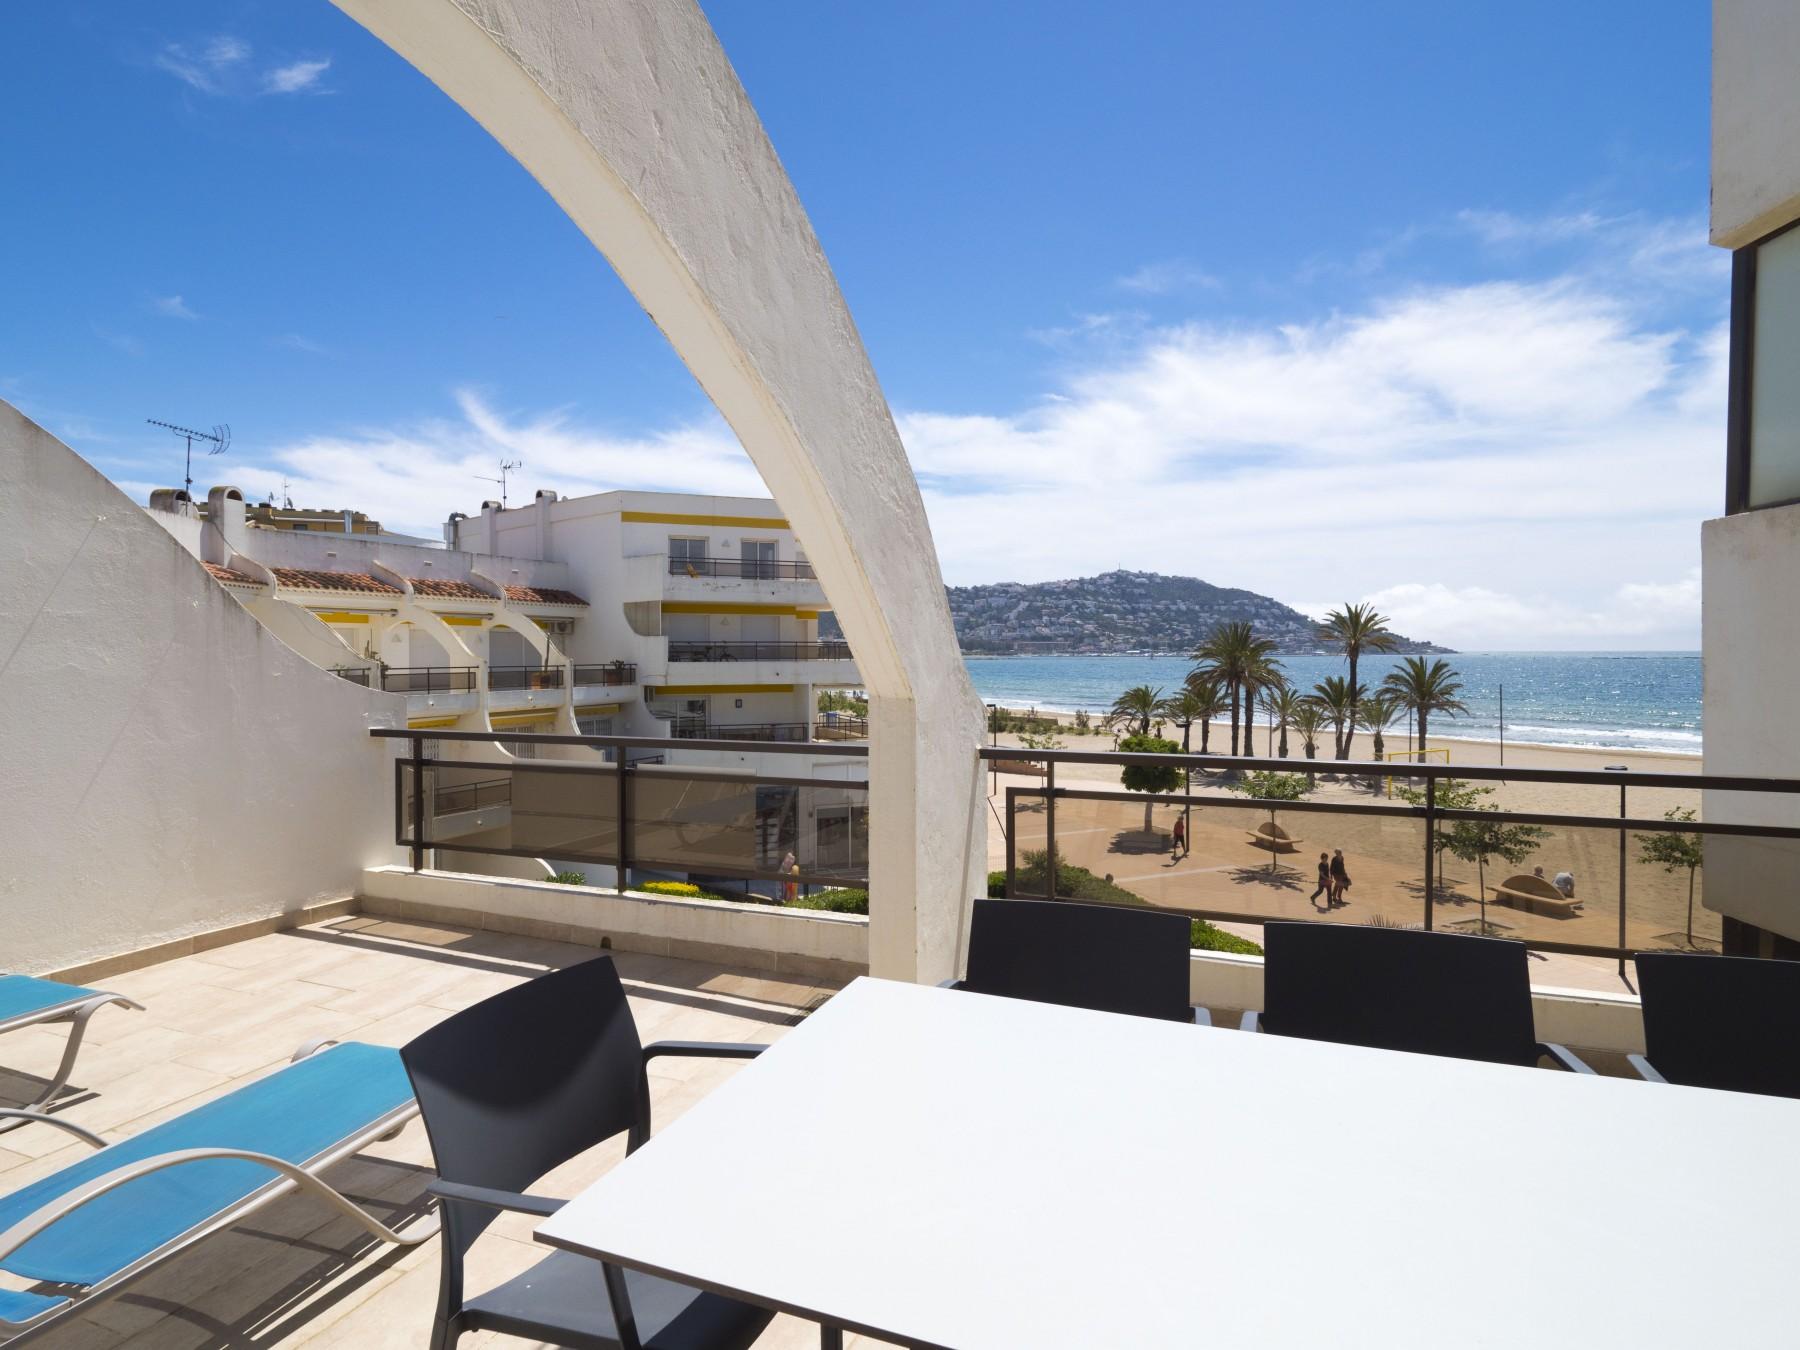 Ferienwohnung für 6 Personen ca. 65 m² i  in Spanien